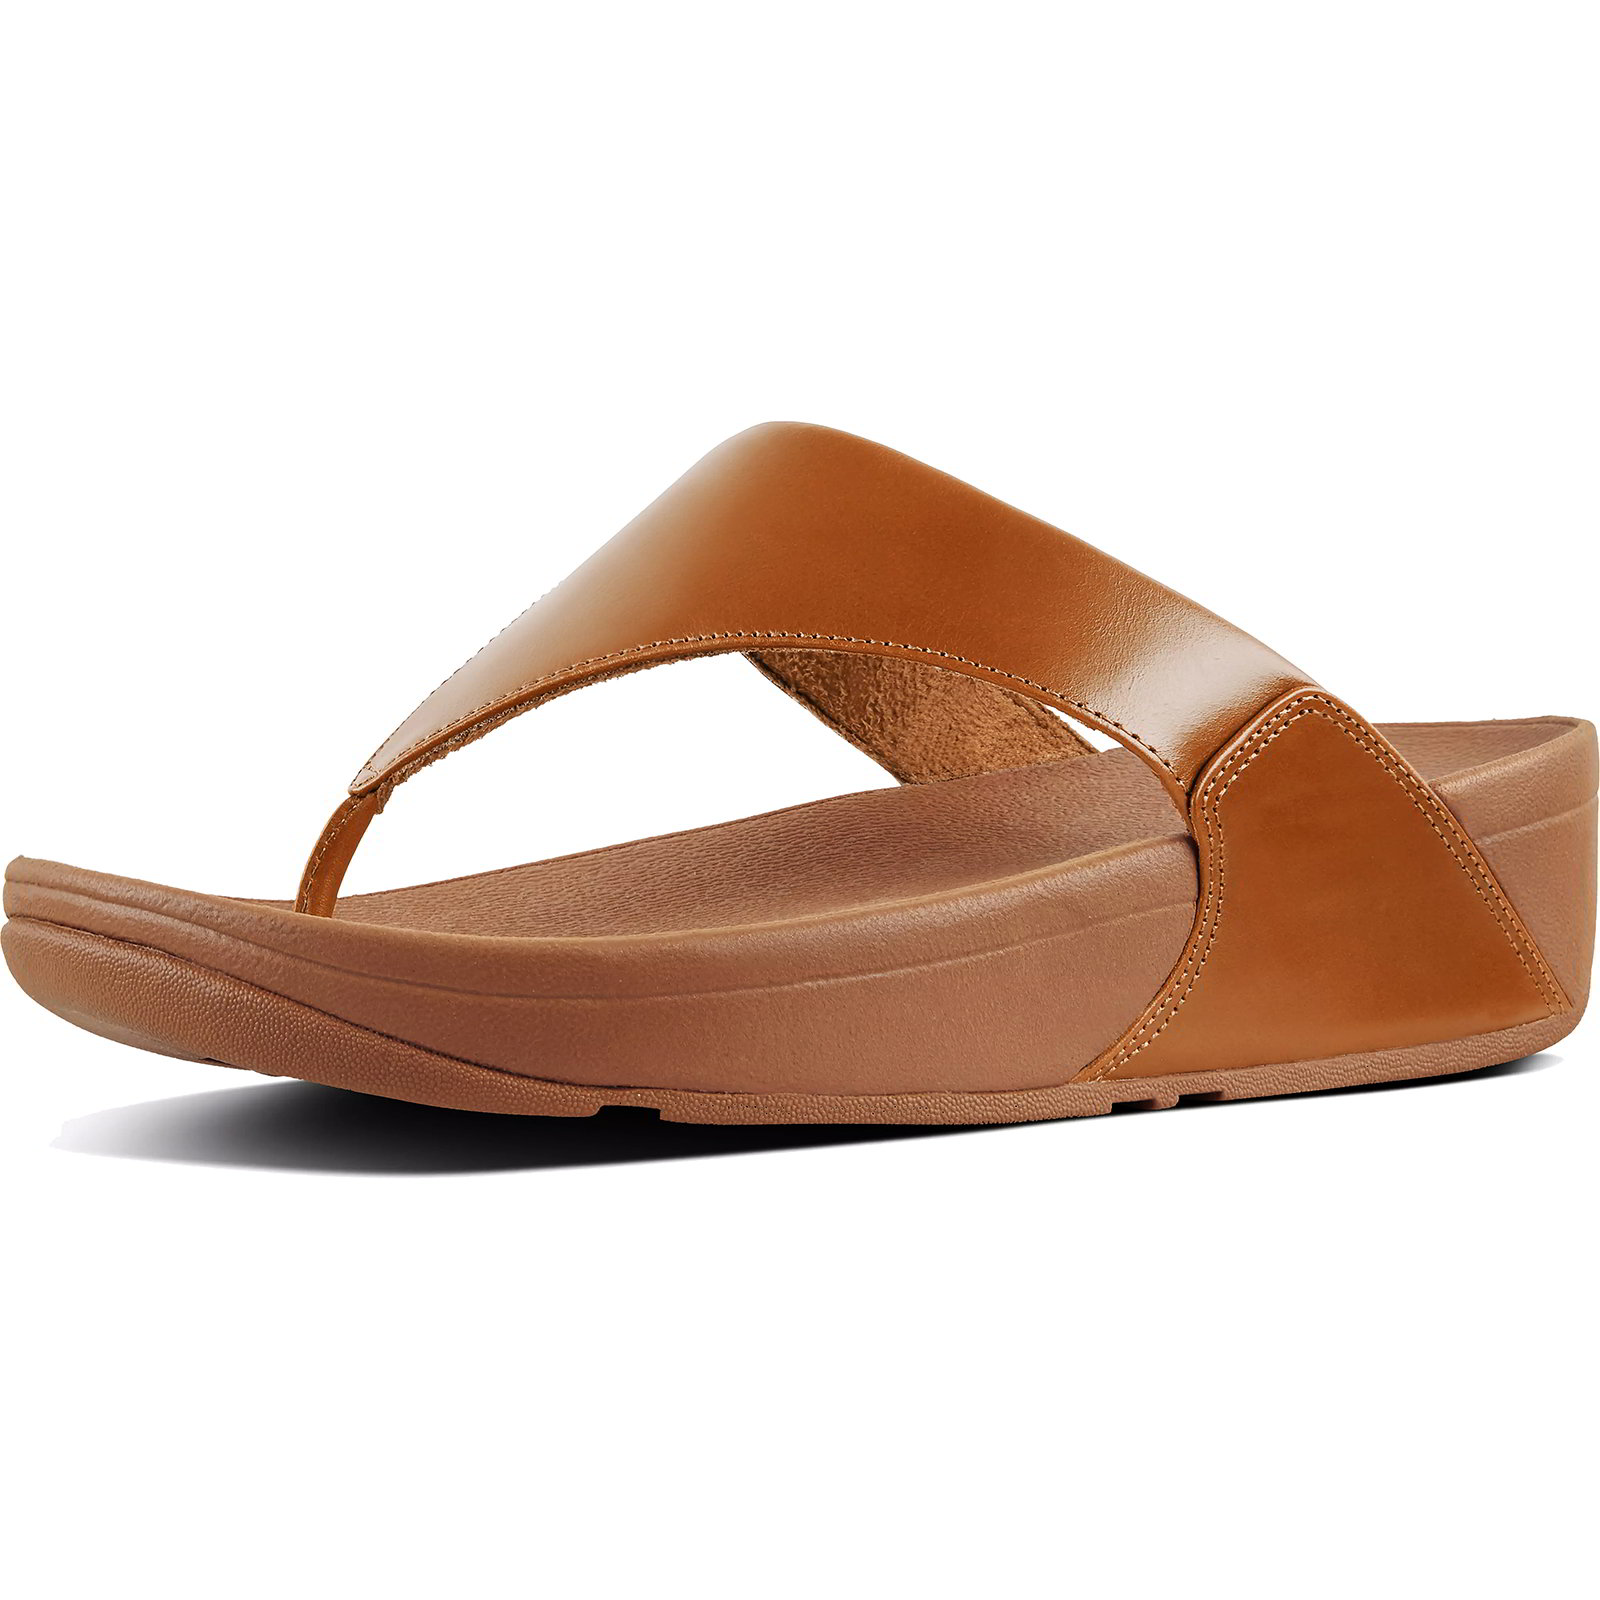 Fitflop Women's Lulu Leather Toe Post Flip Flop Sandals - Light Tan - UK 6